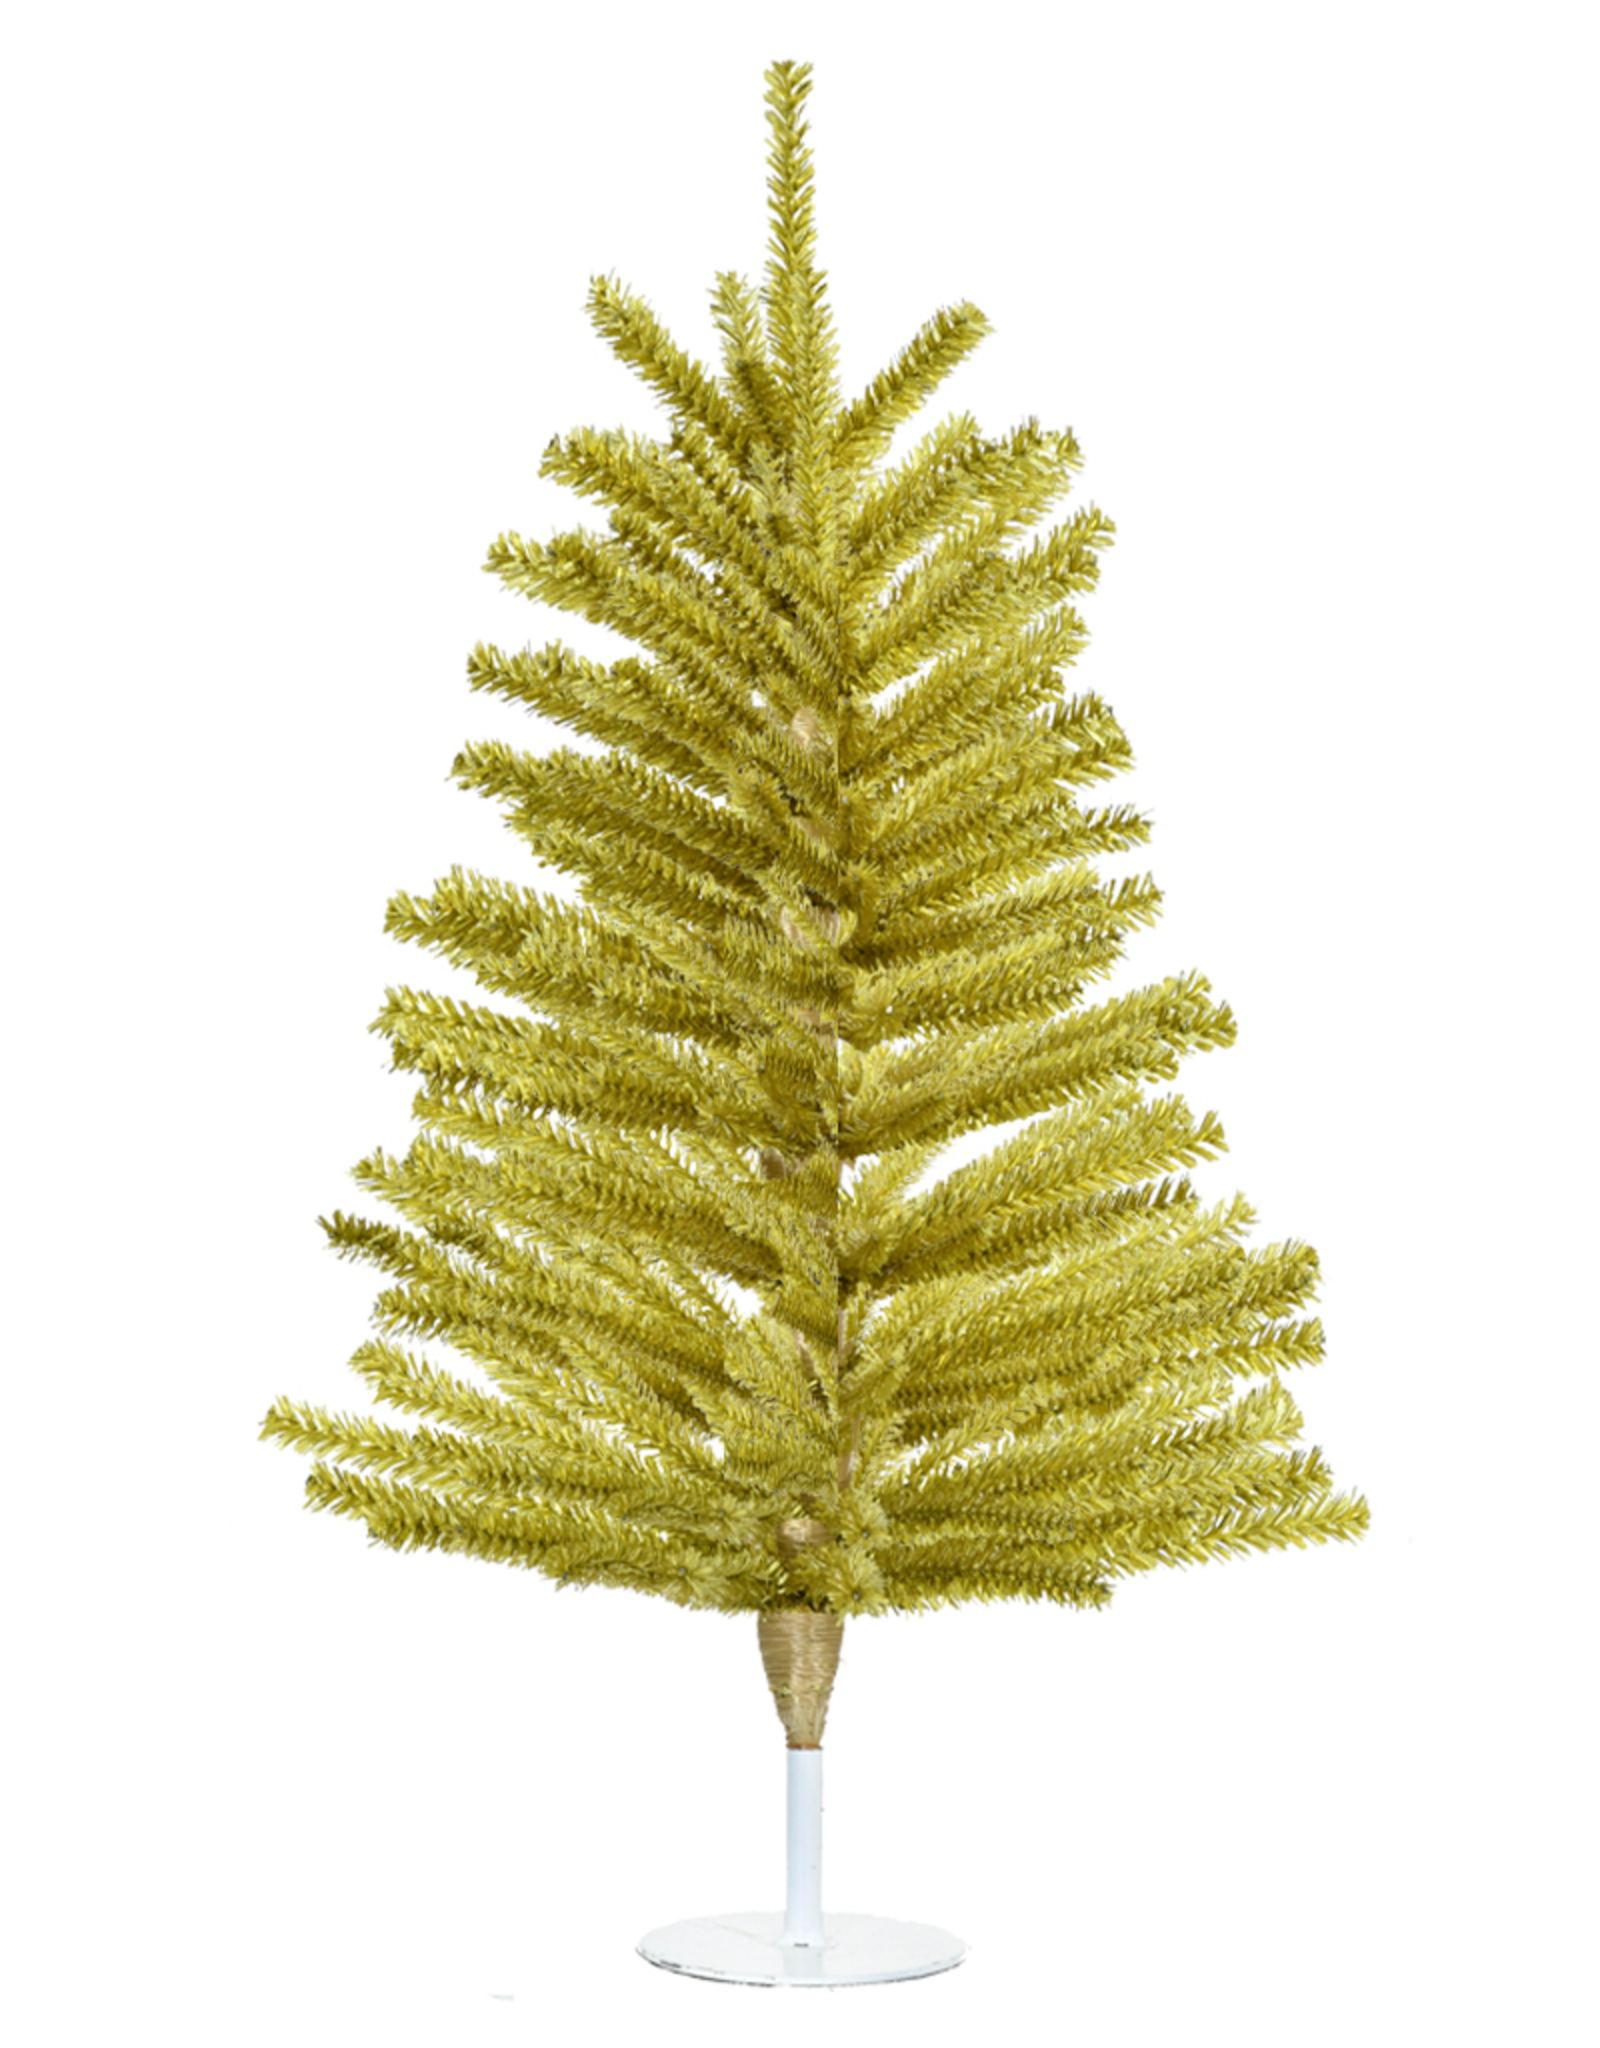 Mini Glitter CHRISTMAS TREES wax melts, Pine Scent